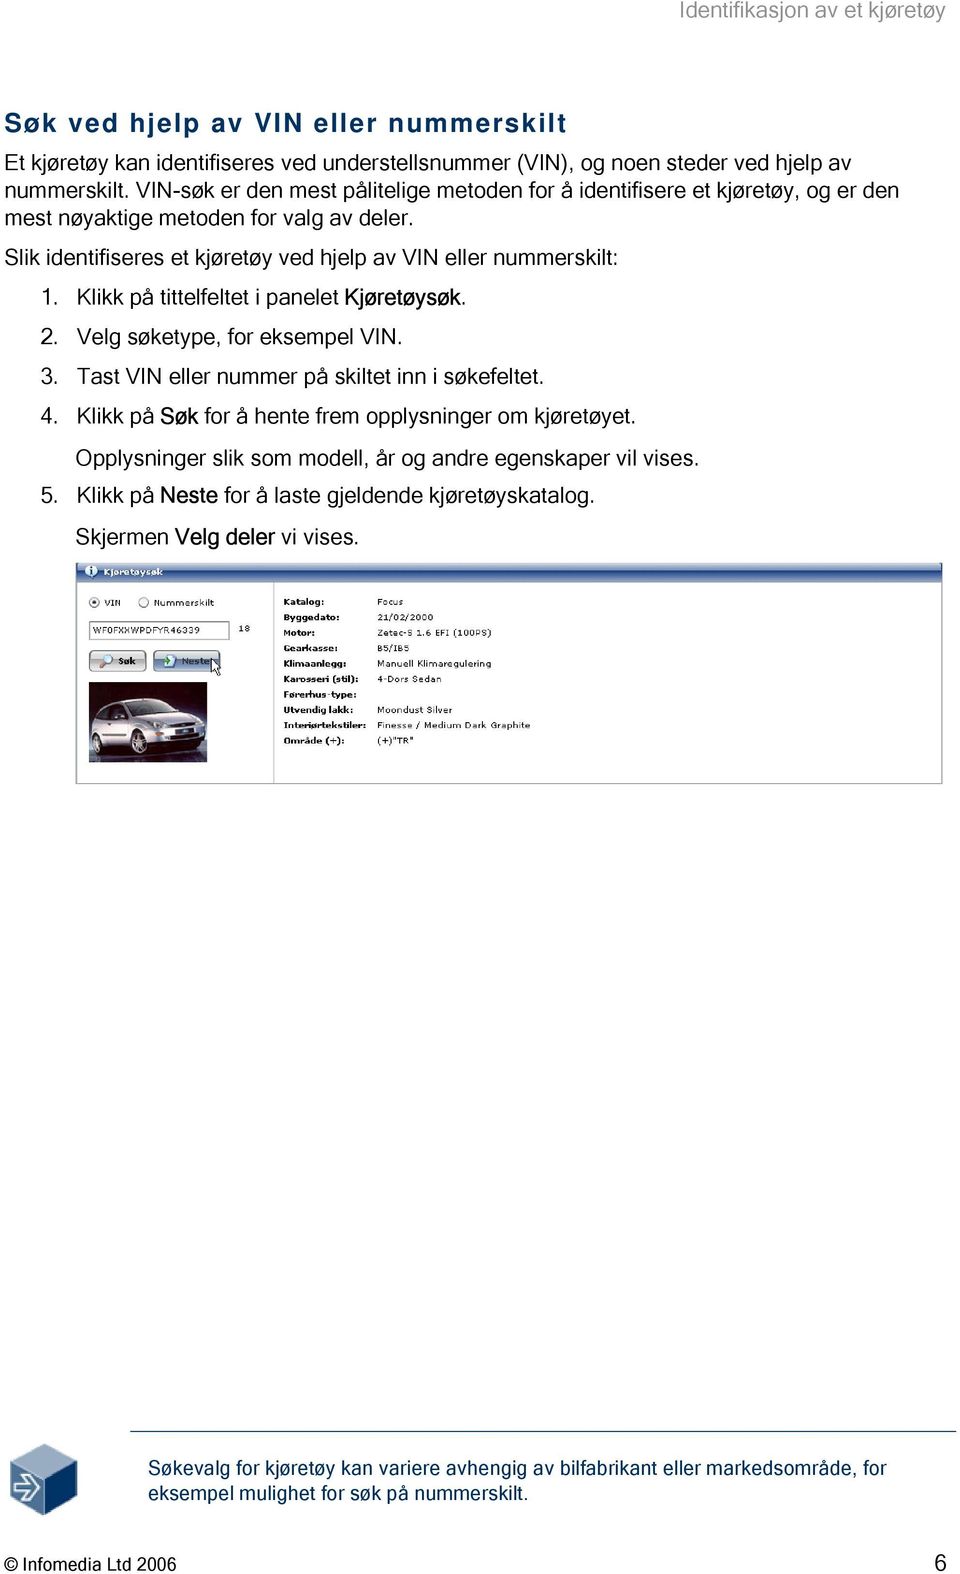 Klikk på tittelfeltet i panelet Kjøretøysøk. 2. Velg søketype, for eksempel VIN. 3. Tast VIN eller nummer på skiltet inn i søkefeltet. 4. Klikk på Søk for å hente frem opplysninger om kjøretøyet.